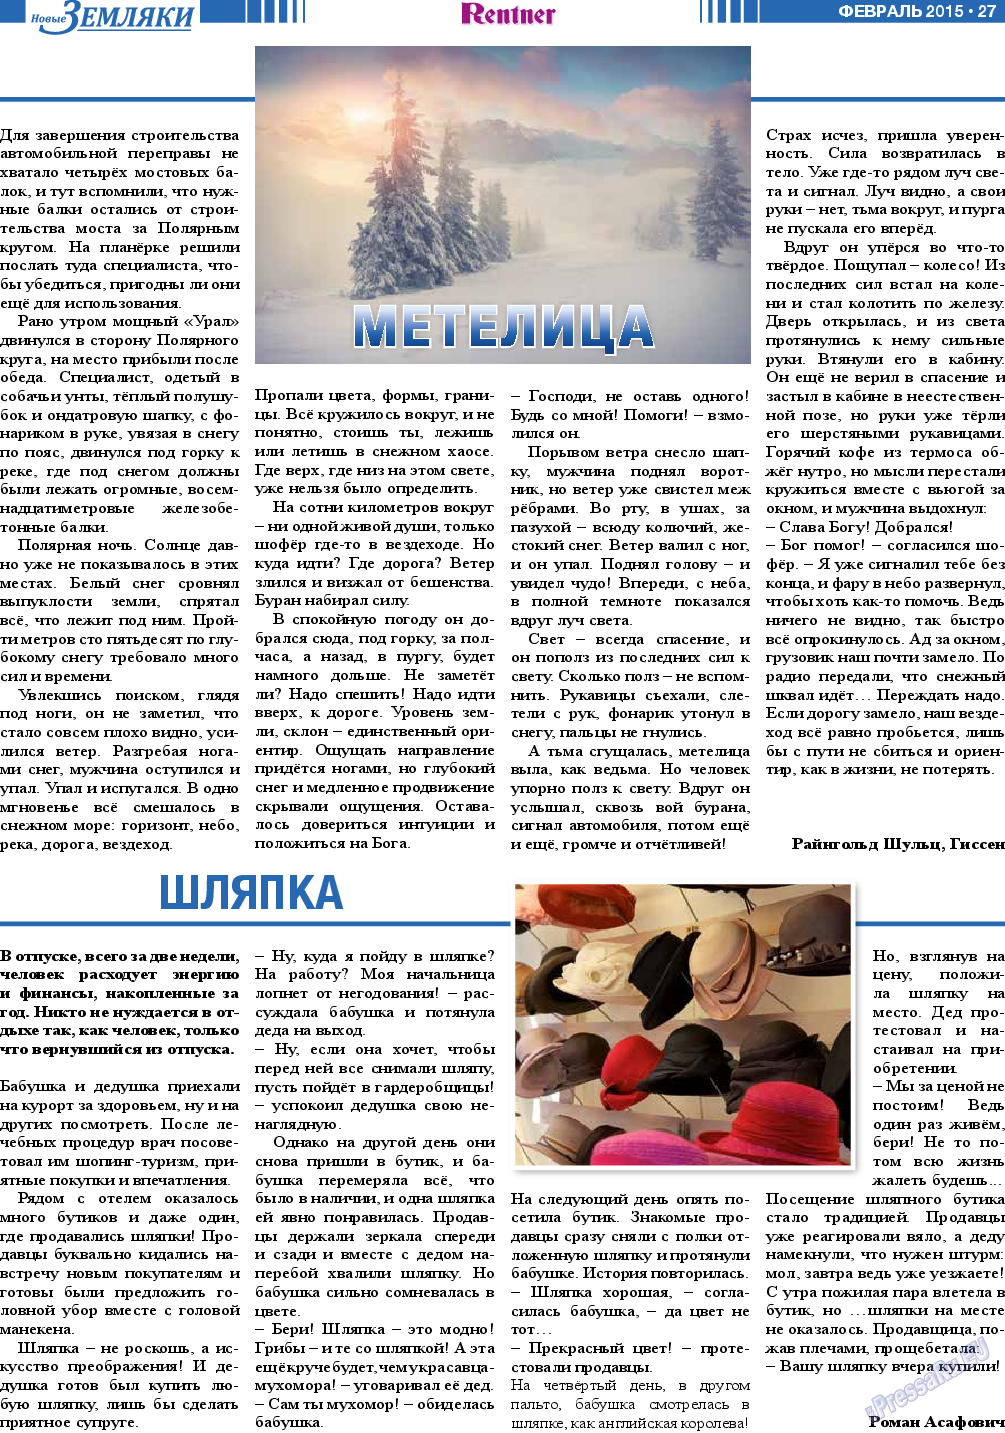 Новые Земляки, газета. 2015 №2 стр.27